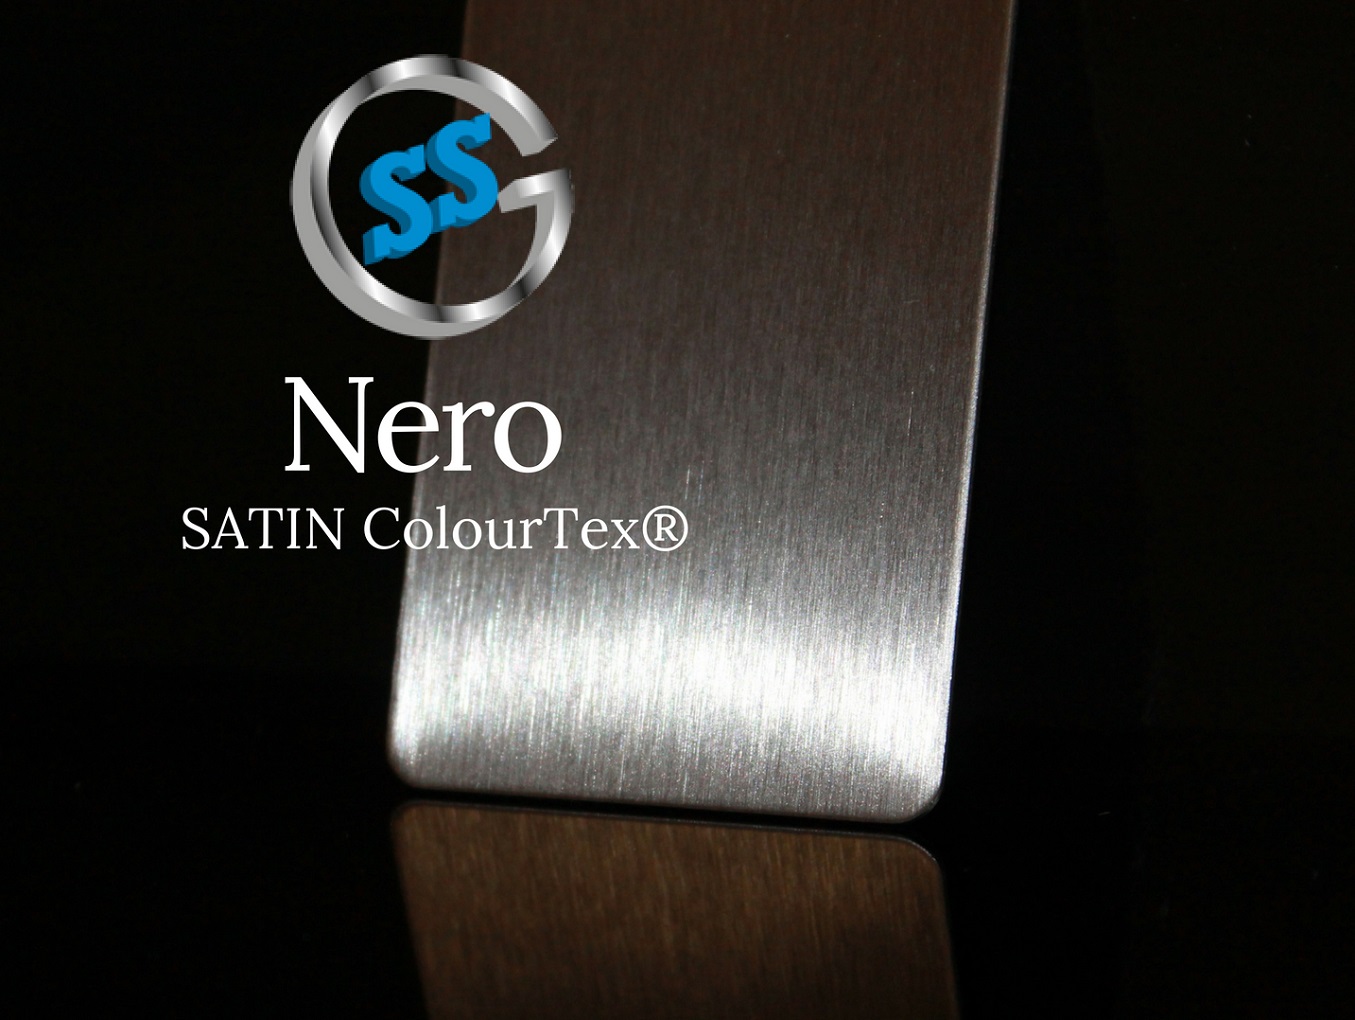 Inox elettro-colorato ColourTex Black Satin, inox satinato colorato galvanico nero, inox black satin